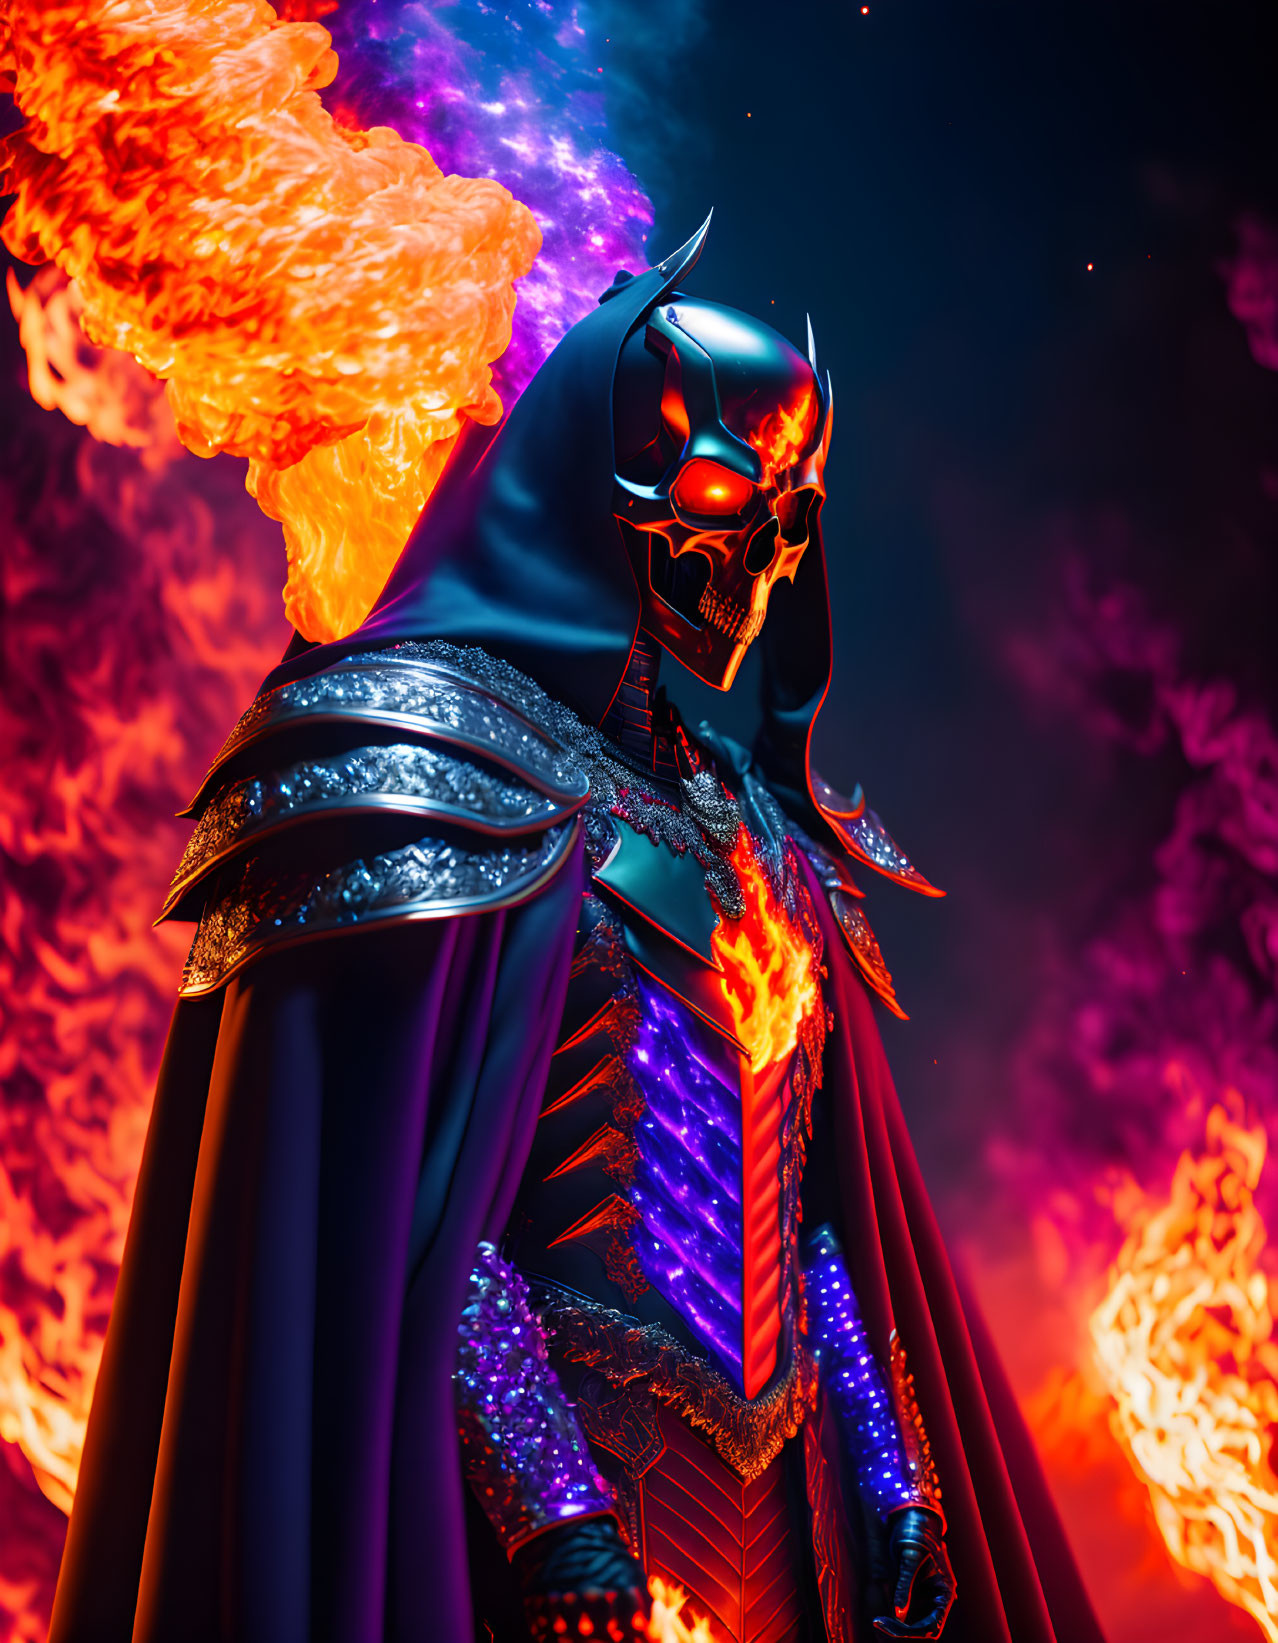 Skeletor, Dark Lord of Eternia